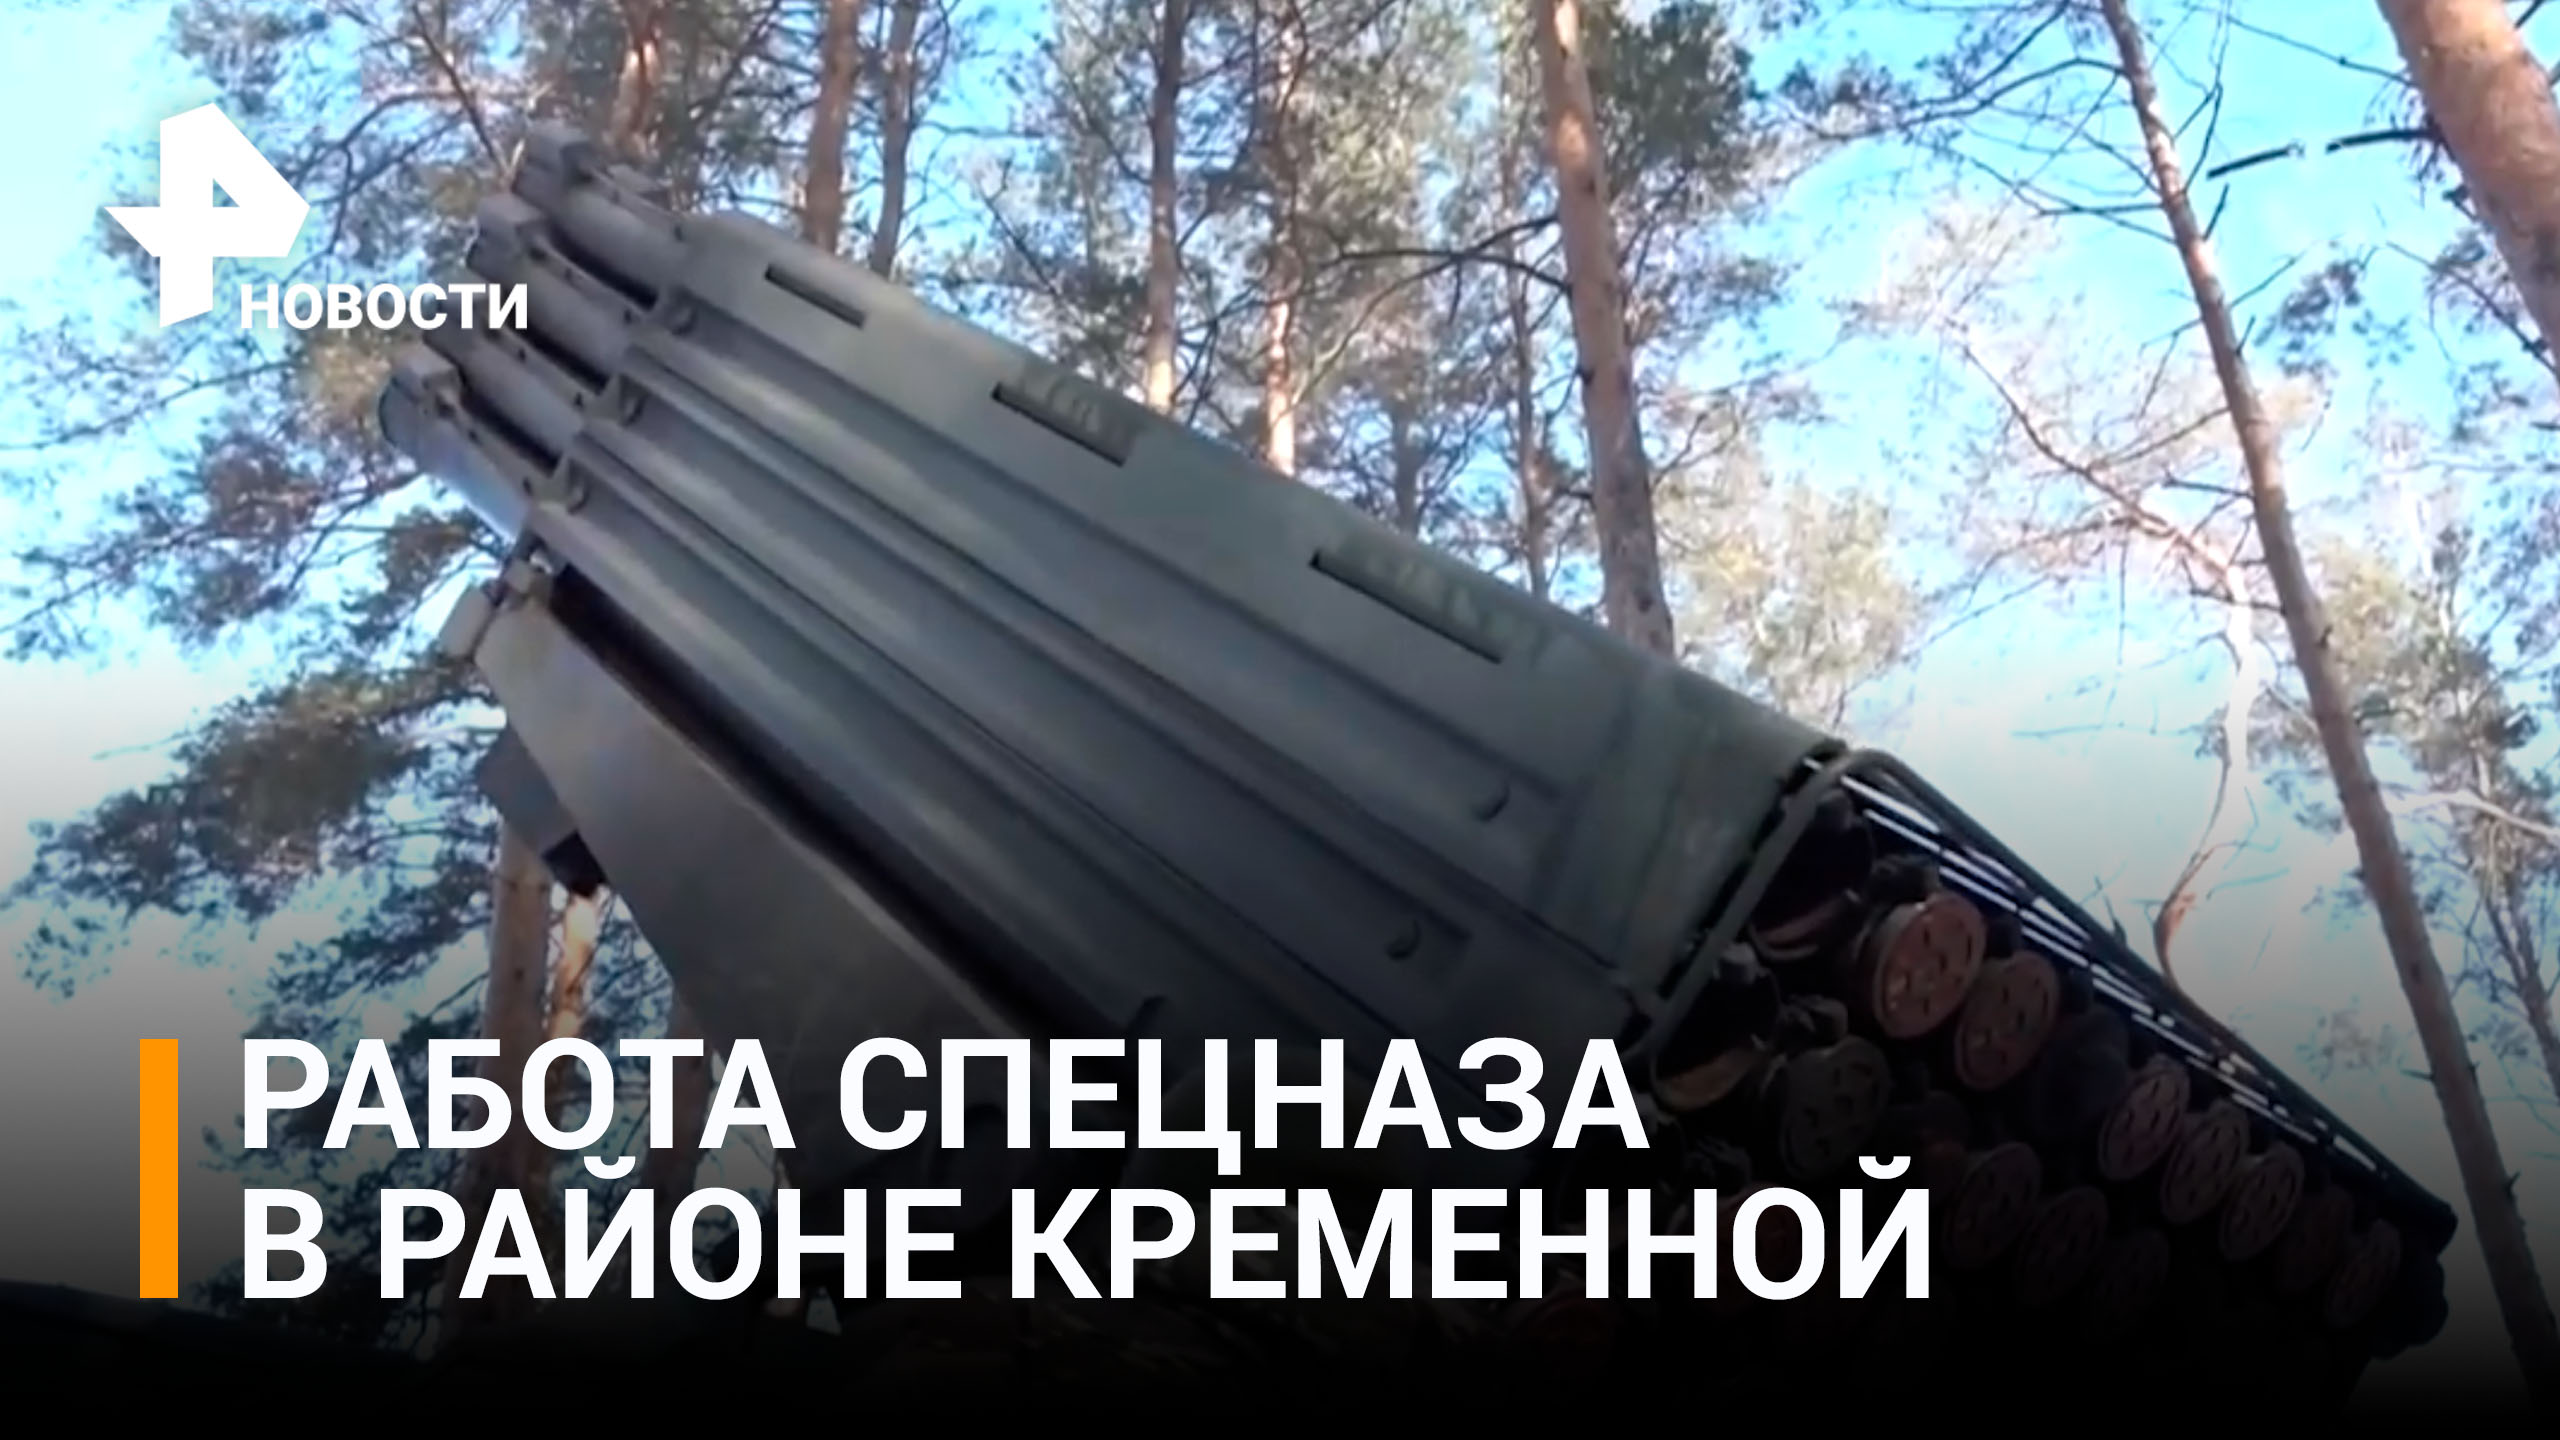 Как бойцы спецназа уничтожают технику ВСУ в районе Кременной / РЕН Новости